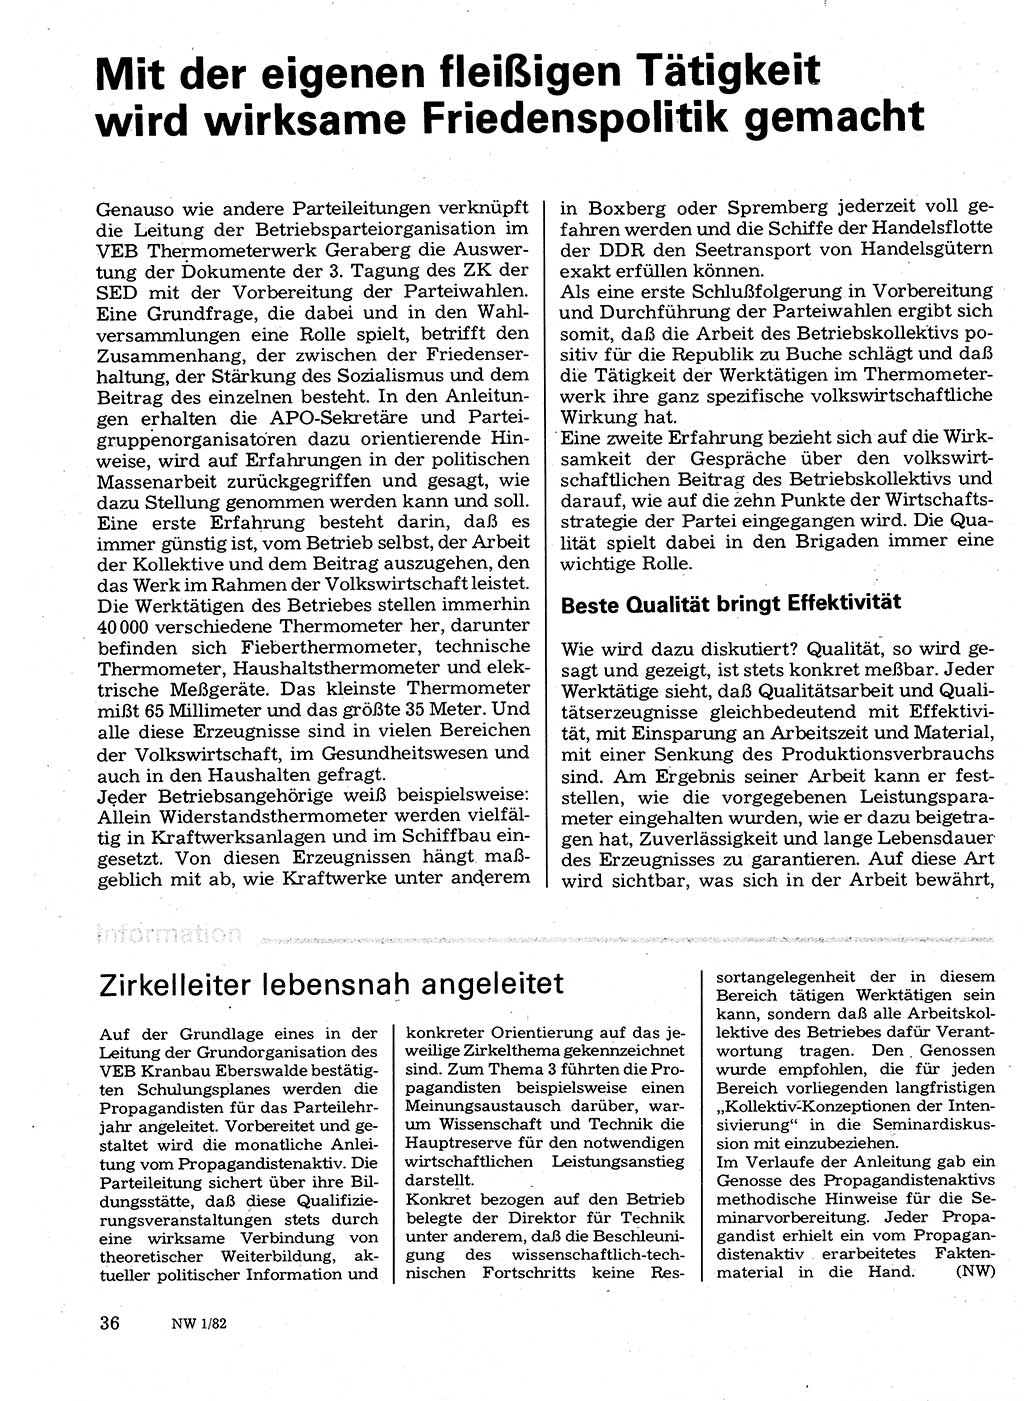 Neuer Weg (NW), Organ des Zentralkomitees (ZK) der SED (Sozialistische Einheitspartei Deutschlands) für Fragen des Parteilebens, 37. Jahrgang [Deutsche Demokratische Republik (DDR)] 1982, Seite 36 (NW ZK SED DDR 1982, S. 36)